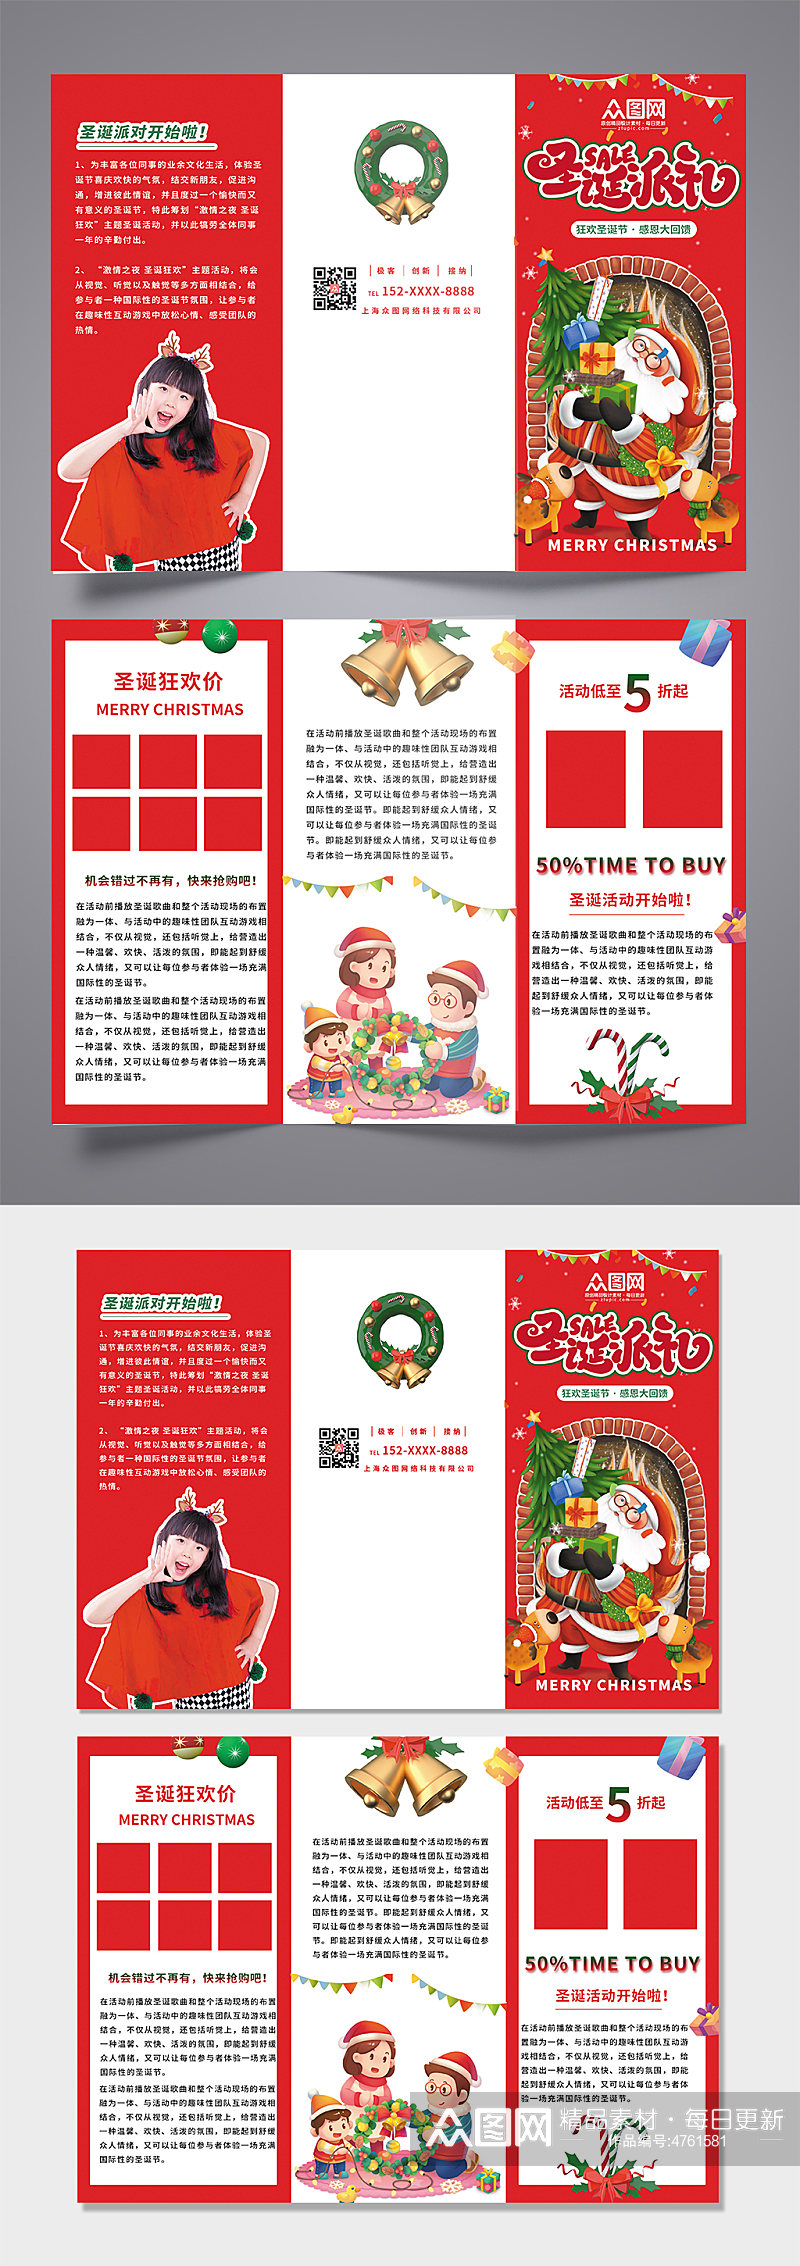 红色简约大气圣诞节促销活动宣传三折页素材